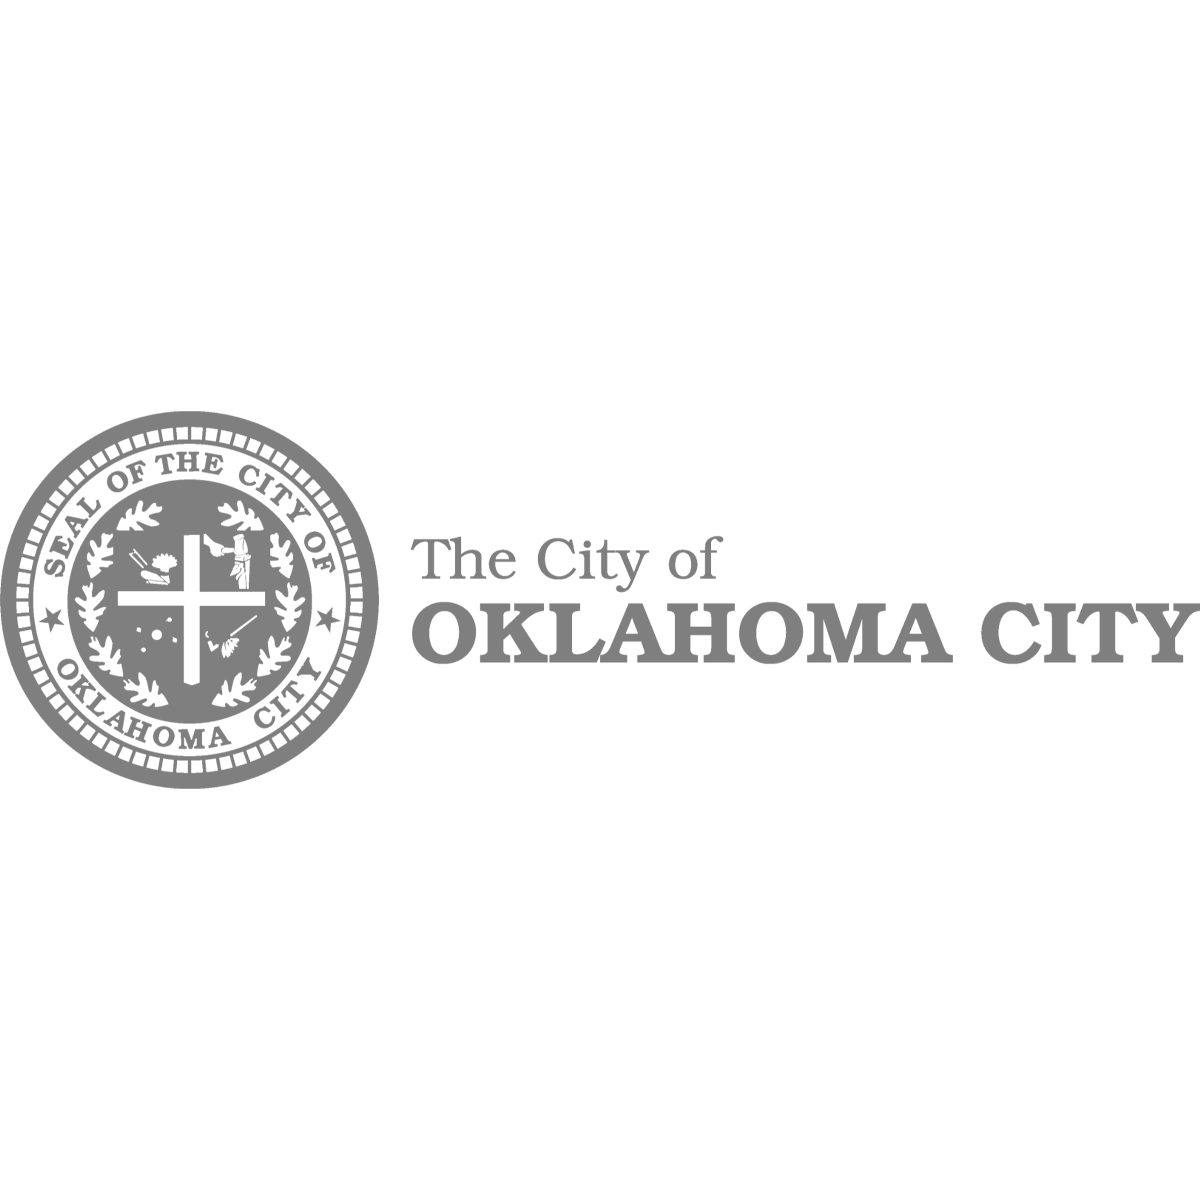 Client - The City of Oklahoma City Logo - Gray